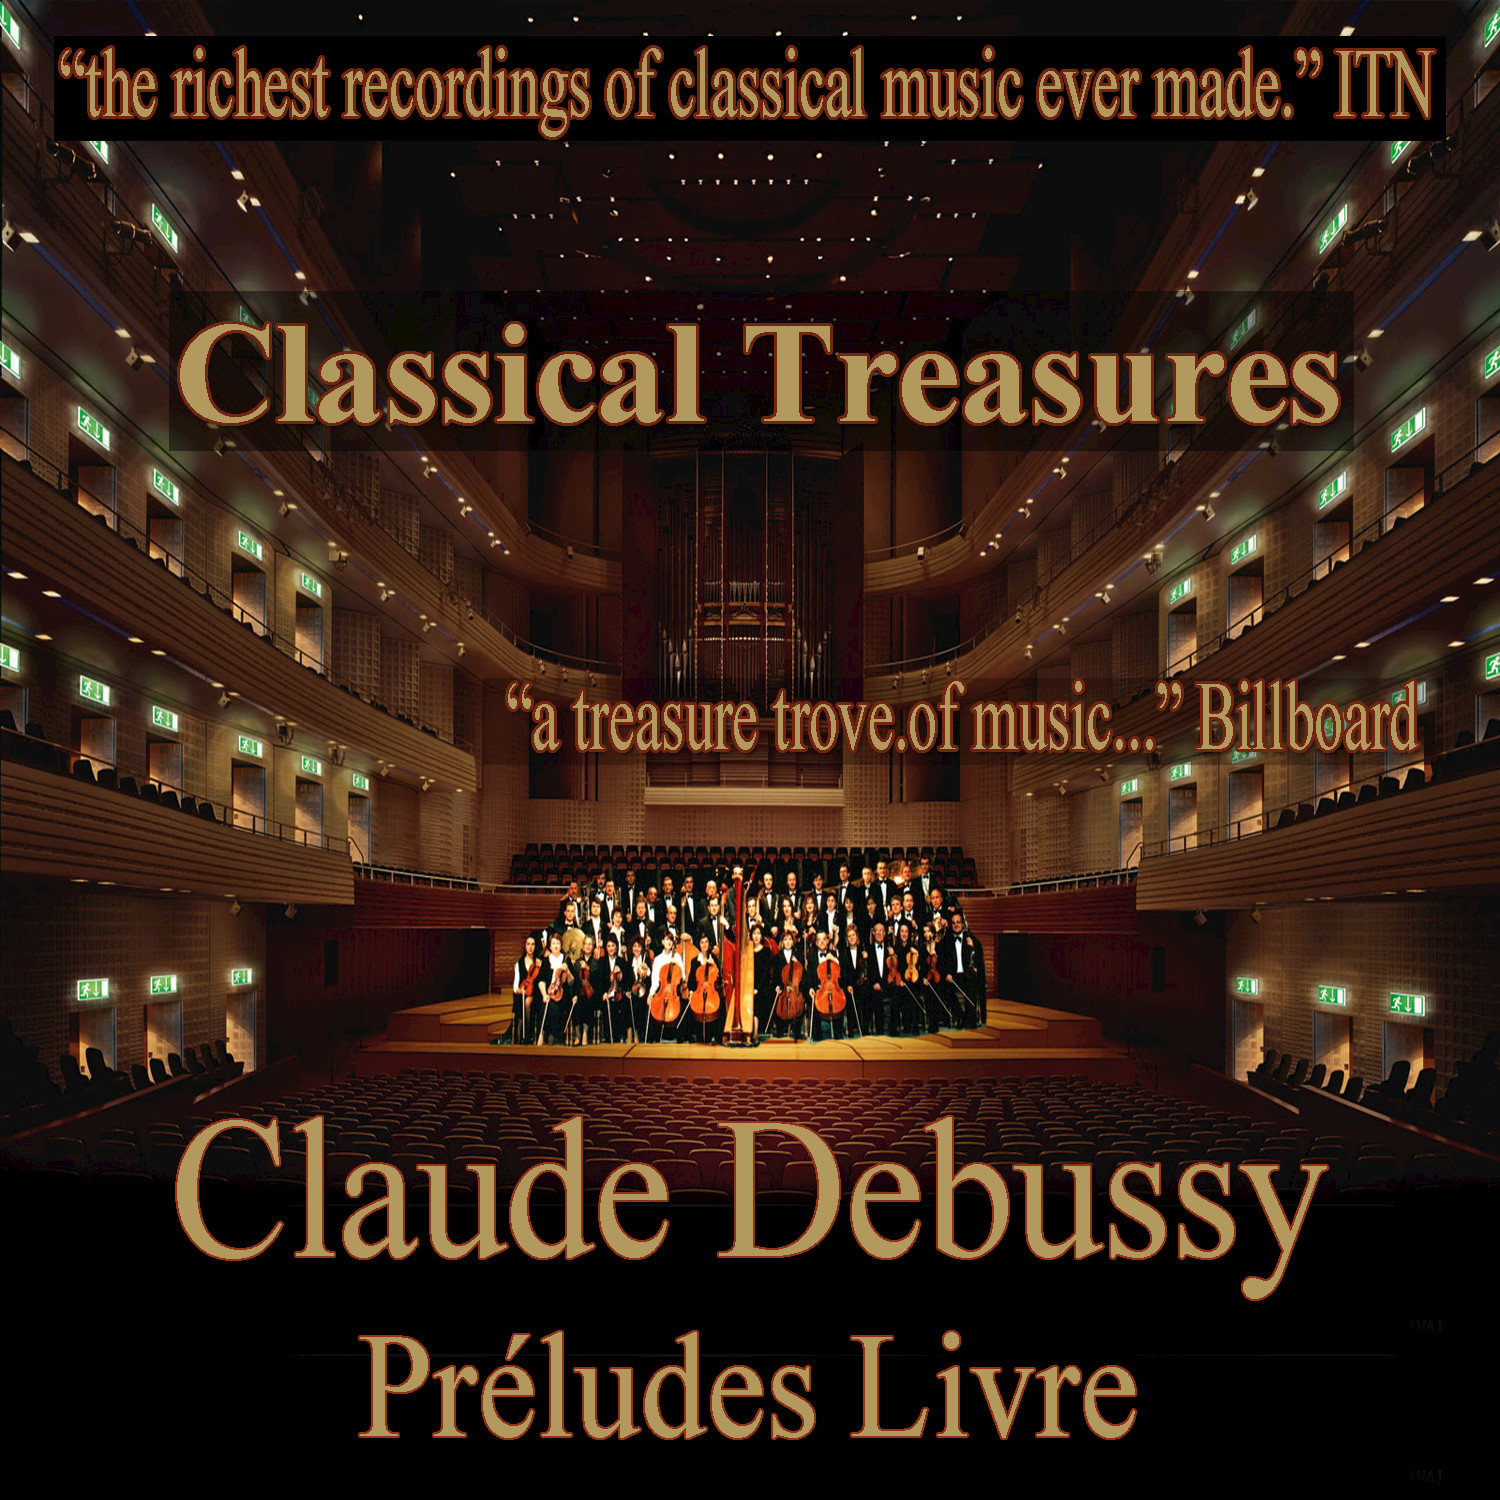 Debussy: Pre ludes Livre